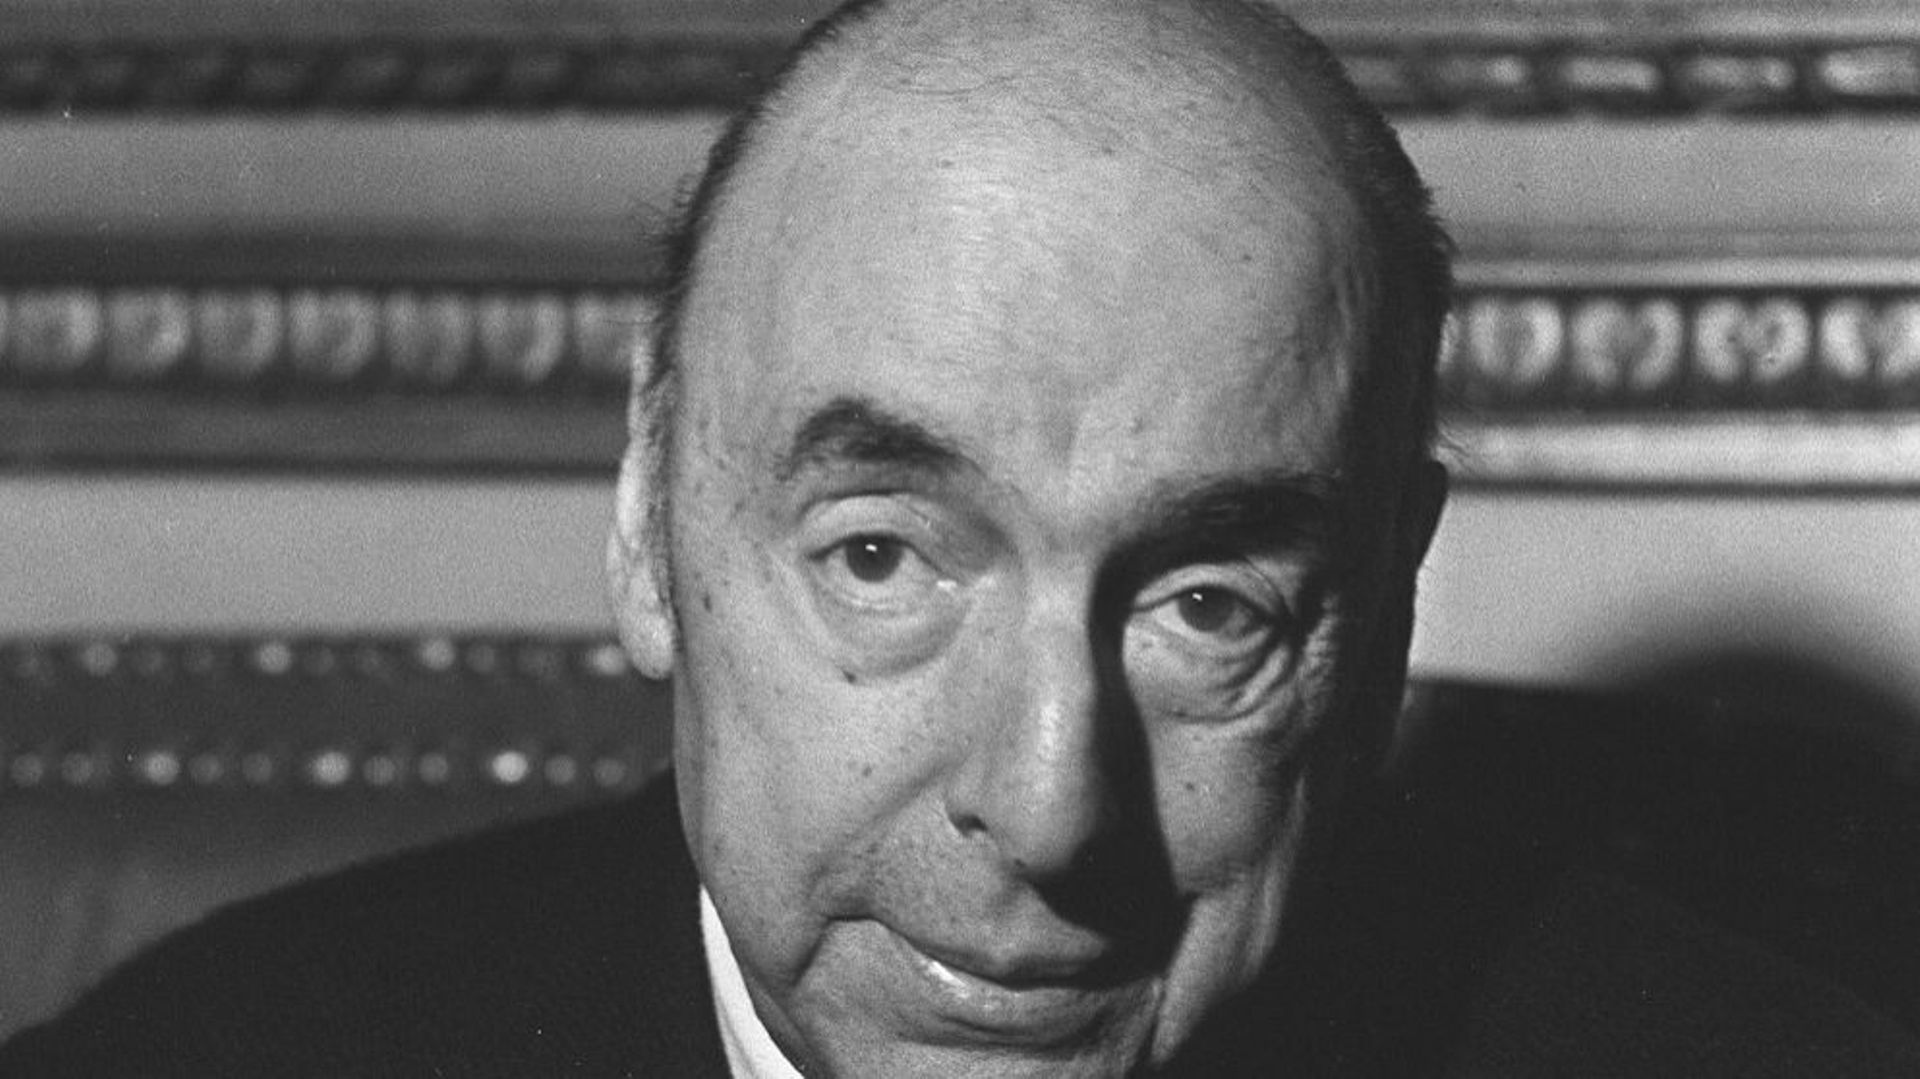 Photo datée du 21 octobre 1971 de l'écrivain, poète et diplomate chilien, Pablo Neruda. Alors ambassadeur du Chili en France, le poète répond aux questions des journalistes à l'ambassade chilienne, après avoir reçu le Prix Nobel de Littérature 1971.